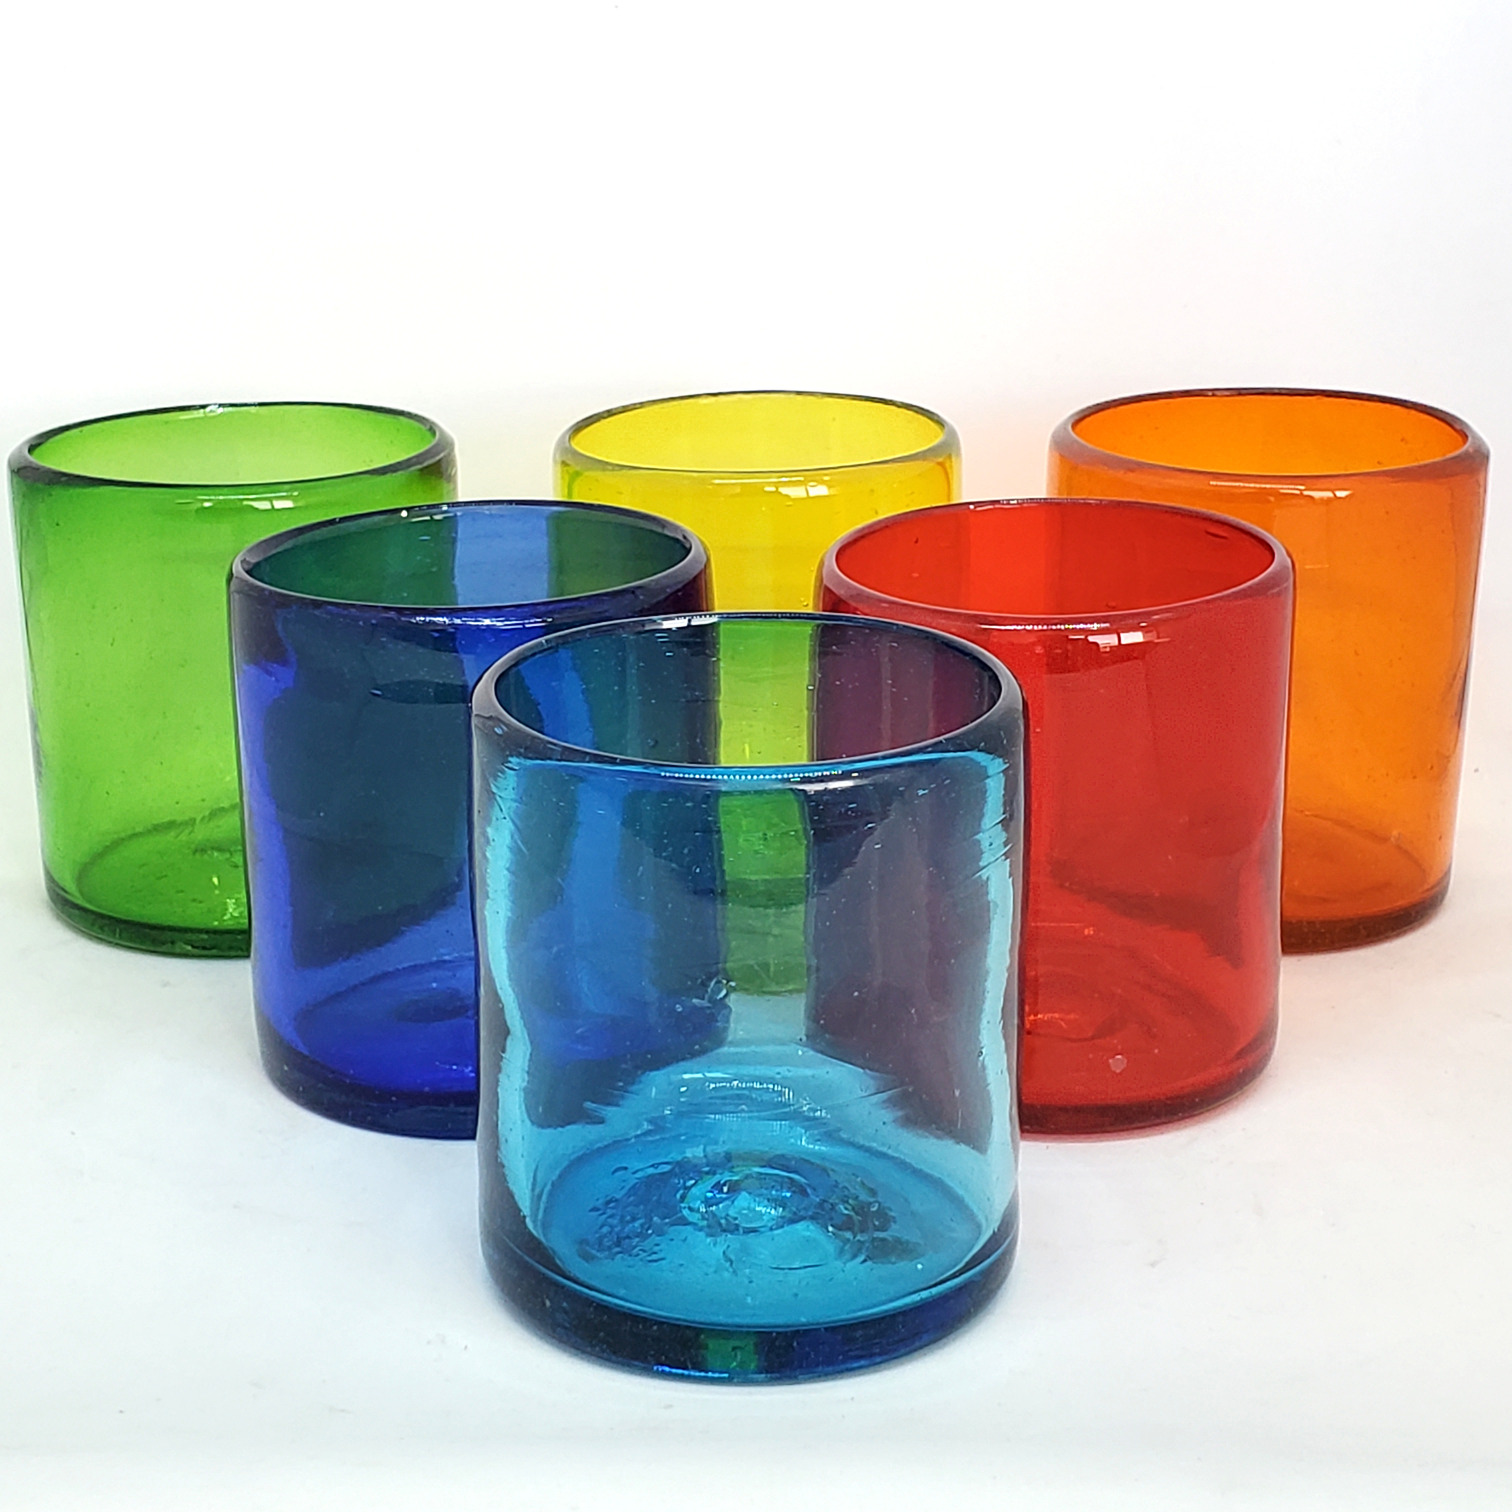 Colores Solidos al Mayoreo / s 9 oz Arcoiris (set de 6) / Éstos artesanales vasos le darán un toque colorido a su bebida favorita.